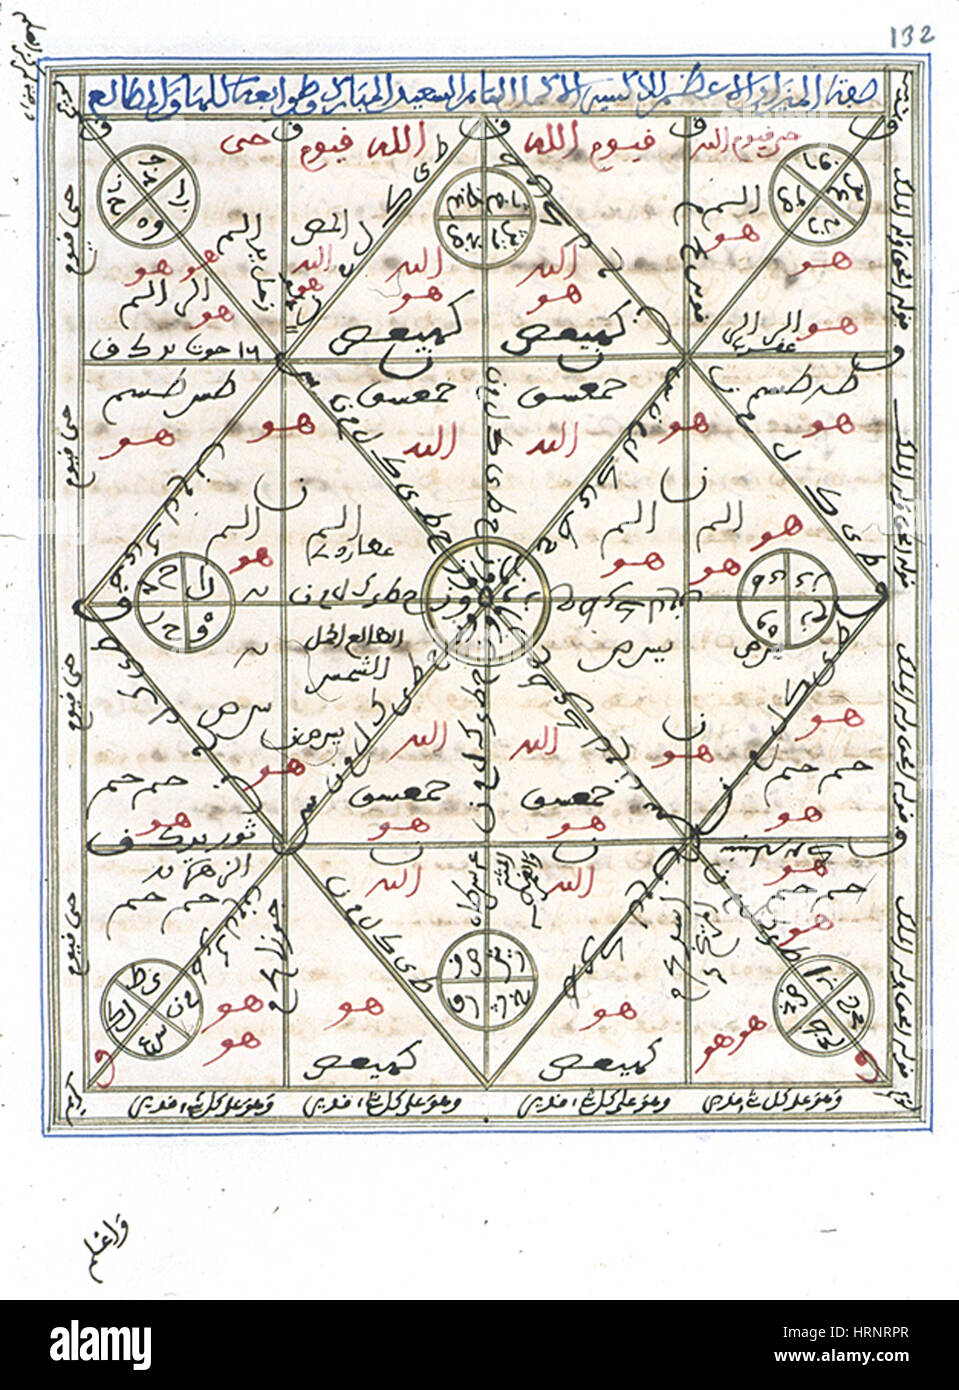 Manuscrit alchimie islamique, 14e siècle Banque D'Images